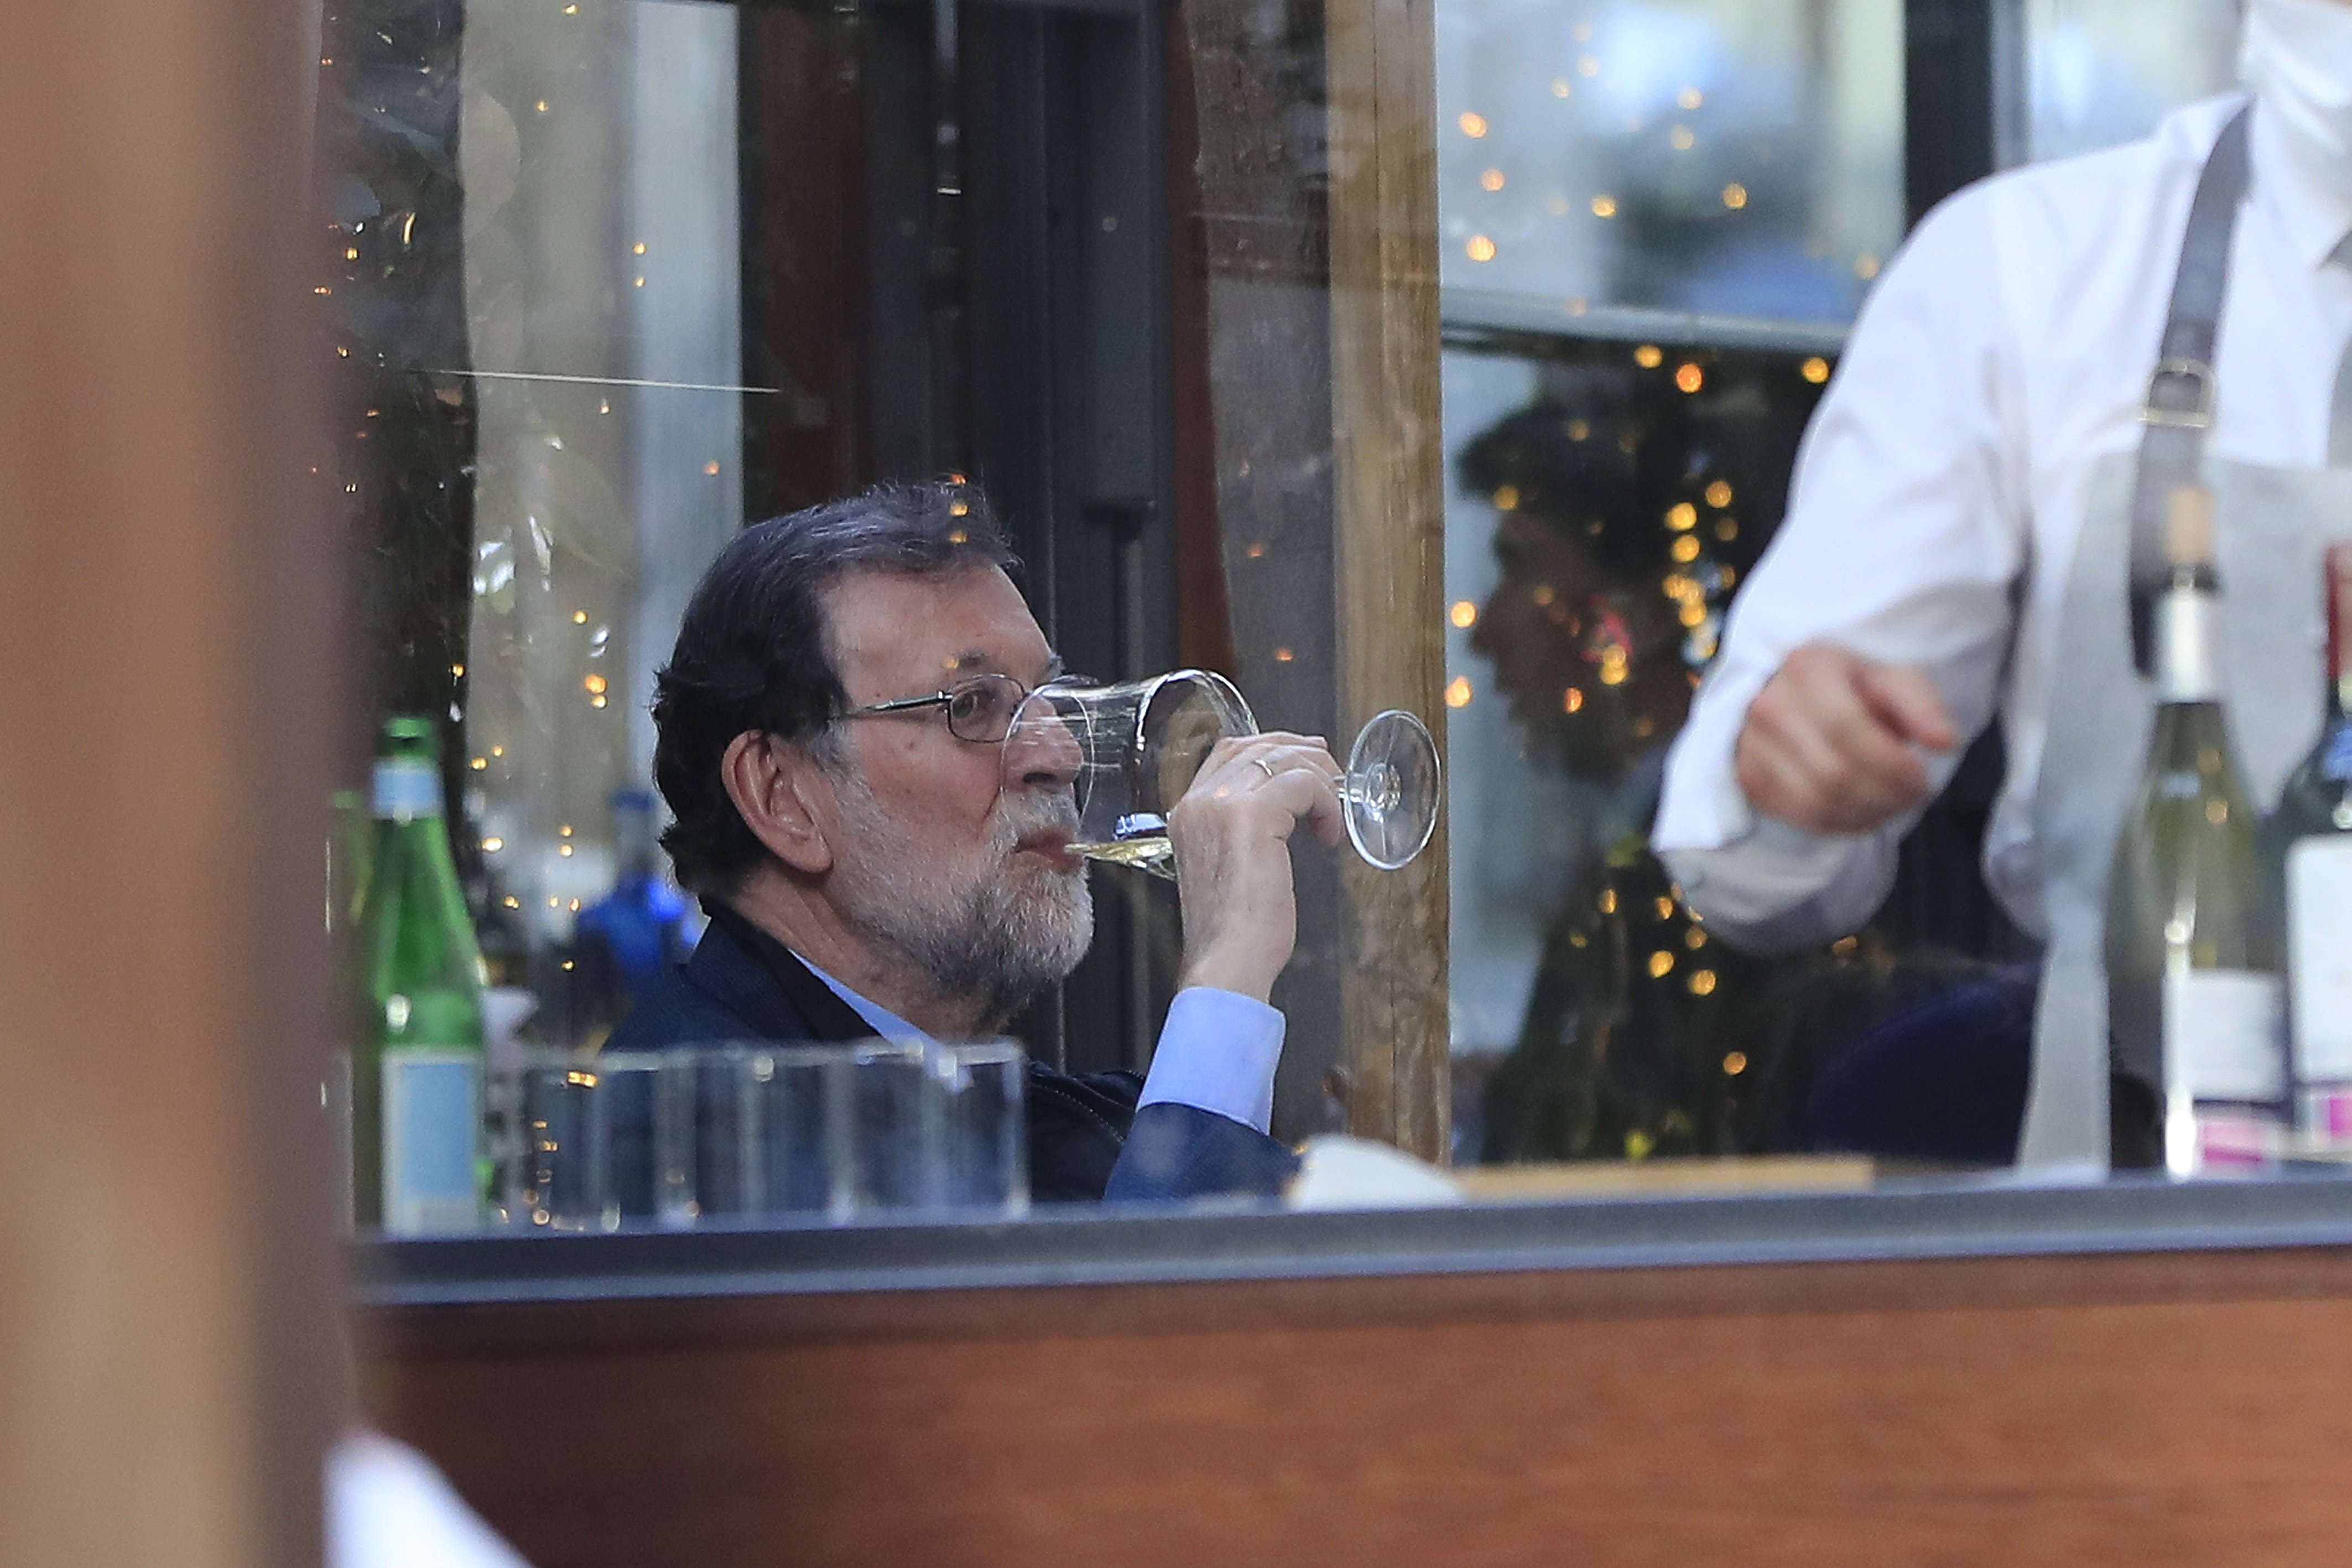 Rajoy pillado bebiendo, sobremesa sin mascarilla ni distancia: "¡Viva el vino!"